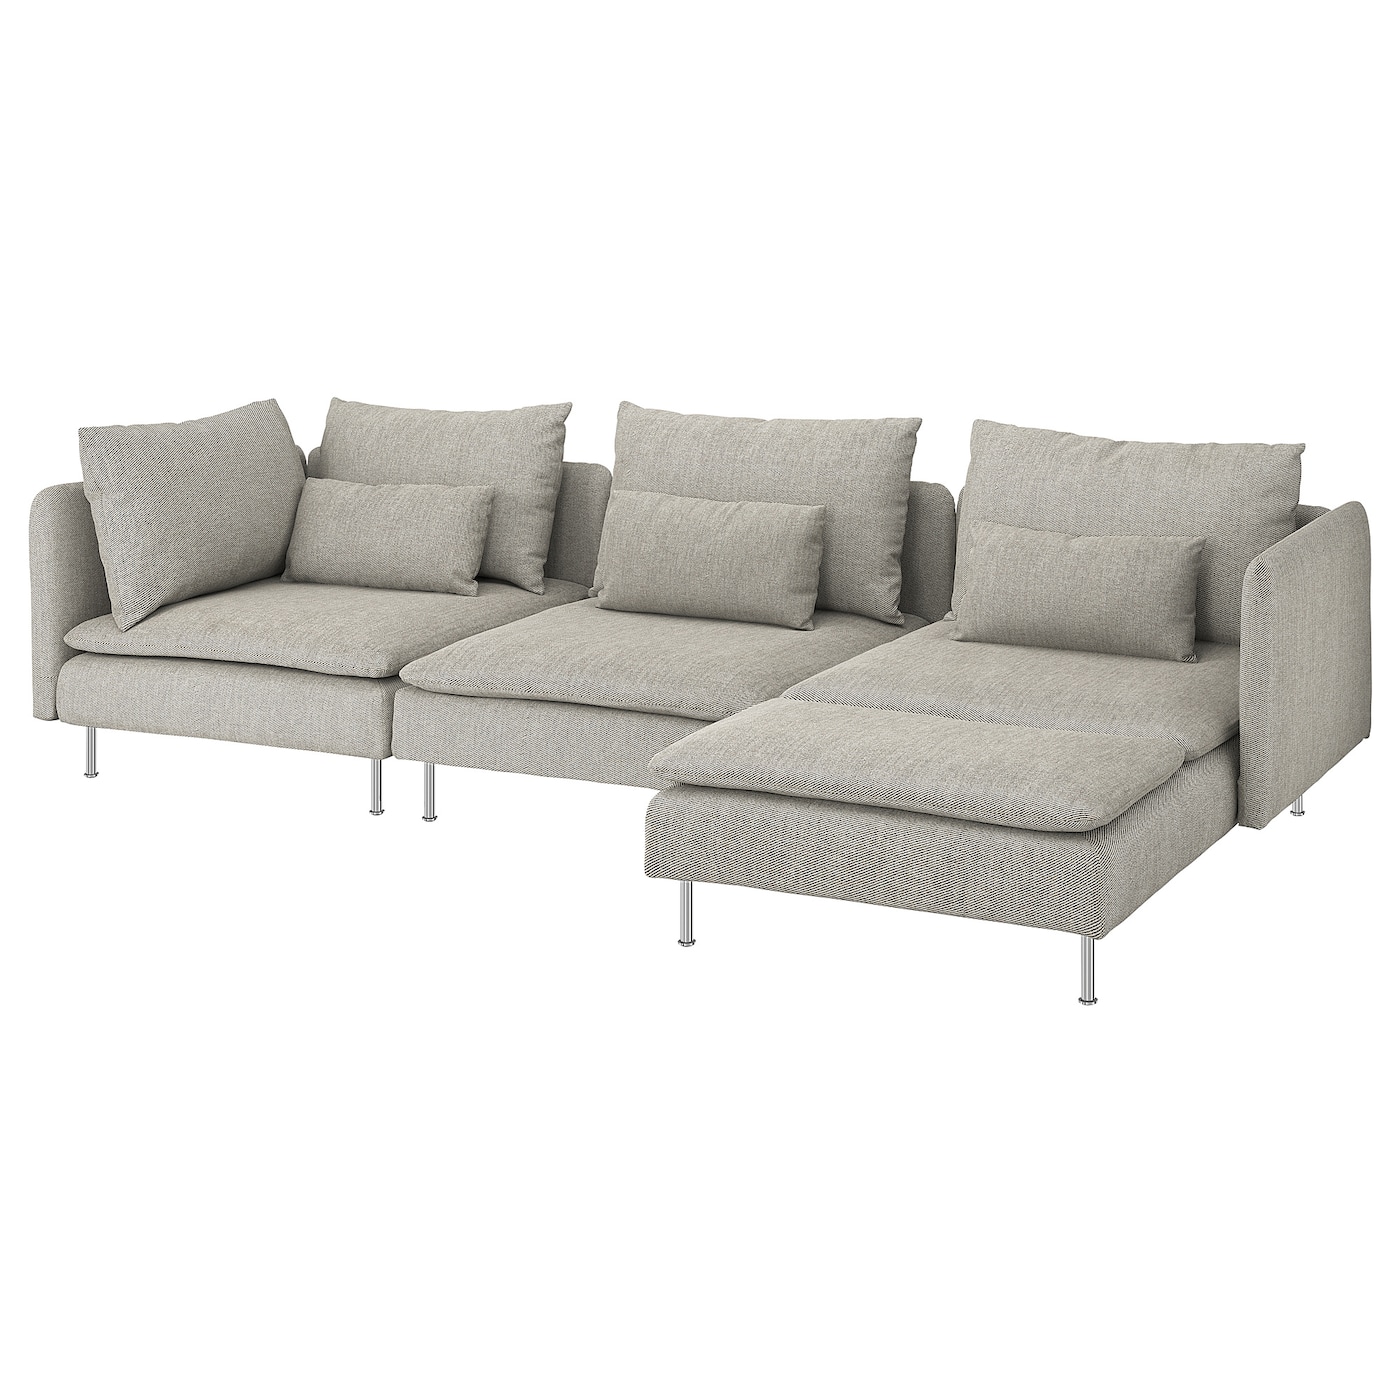 SöDERHAMN - sofa 4-osobowa z szezlongiem/viarp beż/brąz